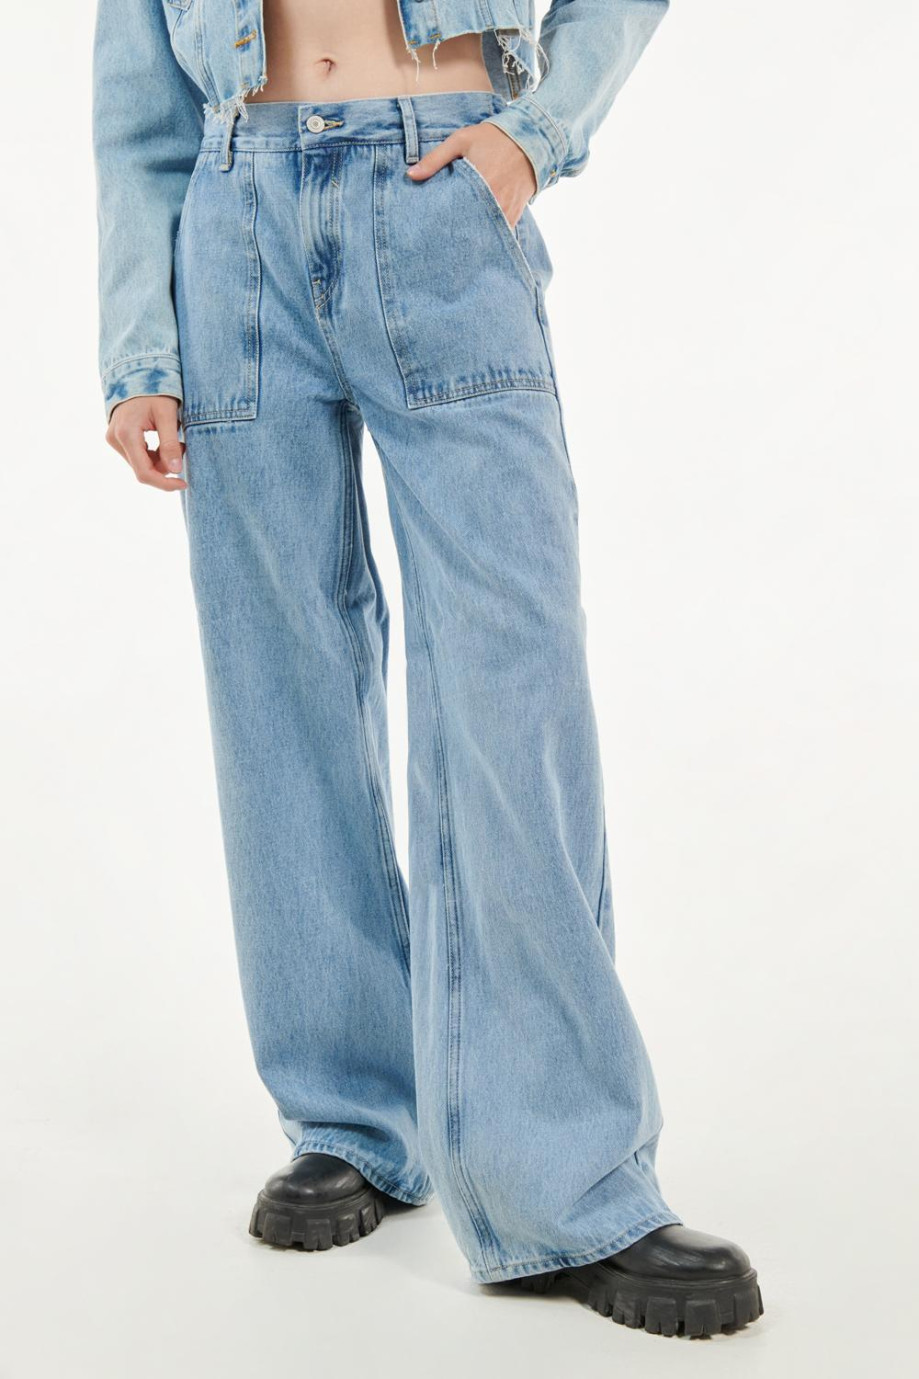 Jean azul claro carpintero con tiro alto, bolsillos y bota ancha